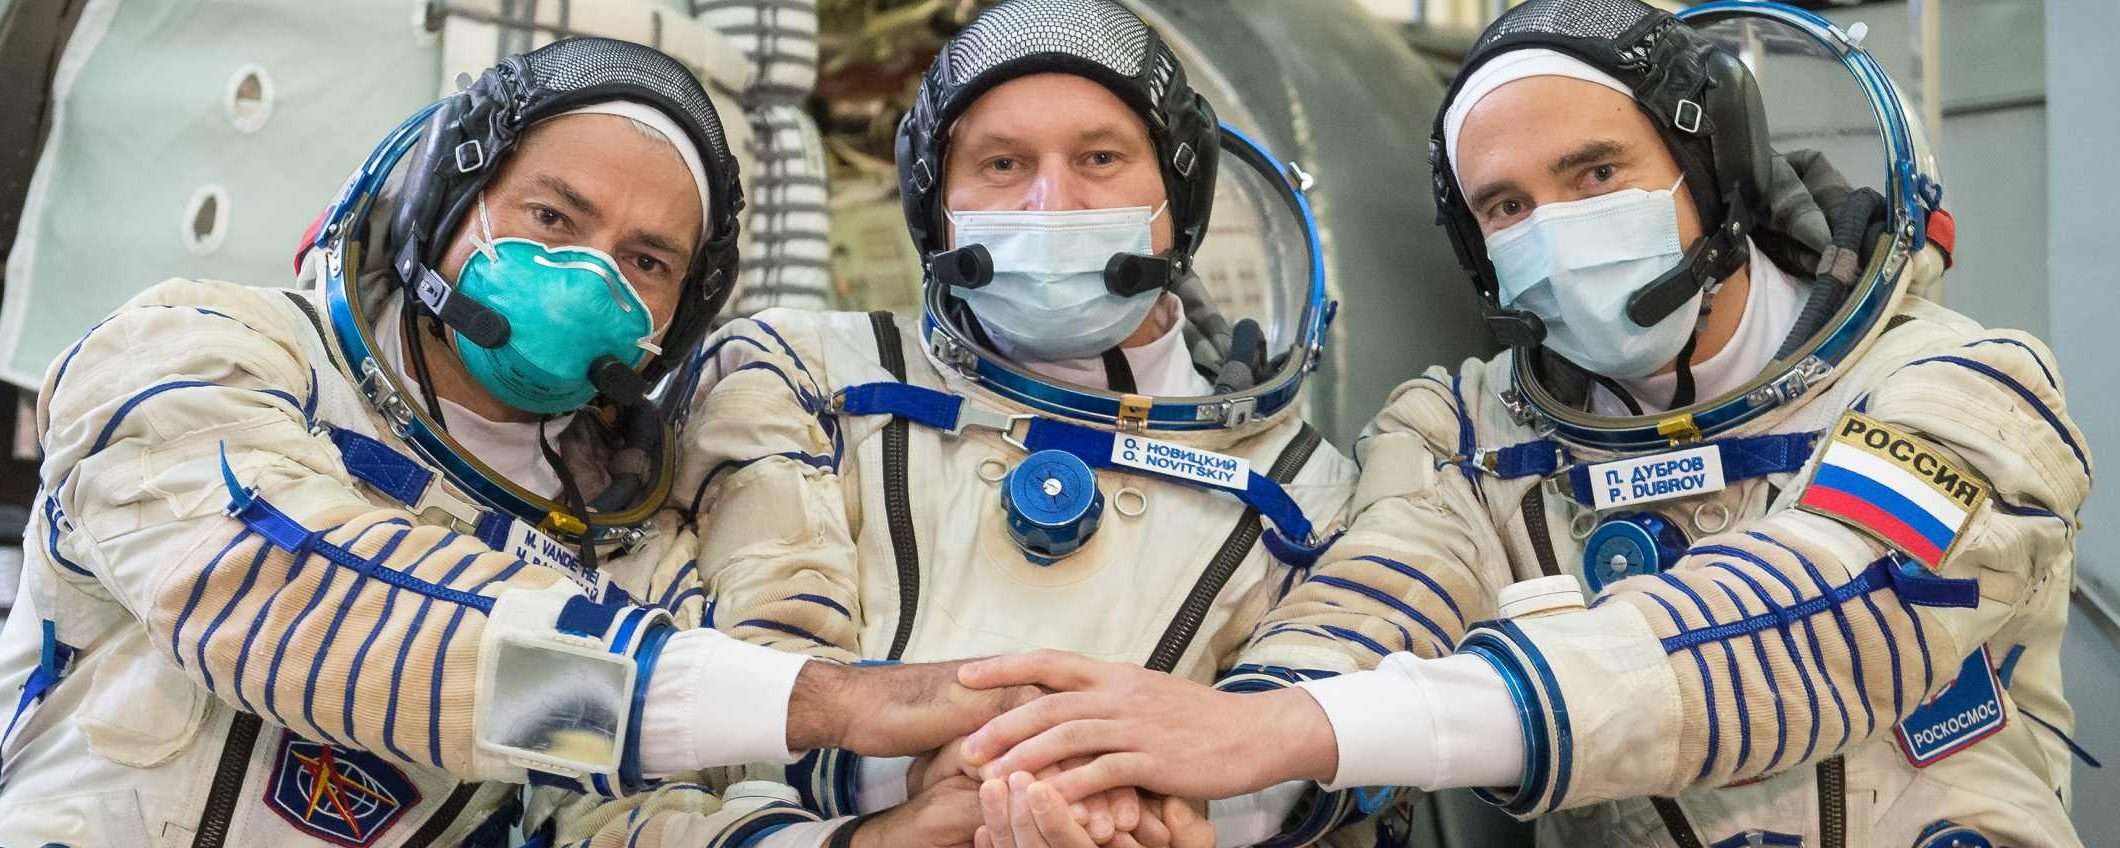 La Russia non lascerà Mark Vande Hei sulla ISS